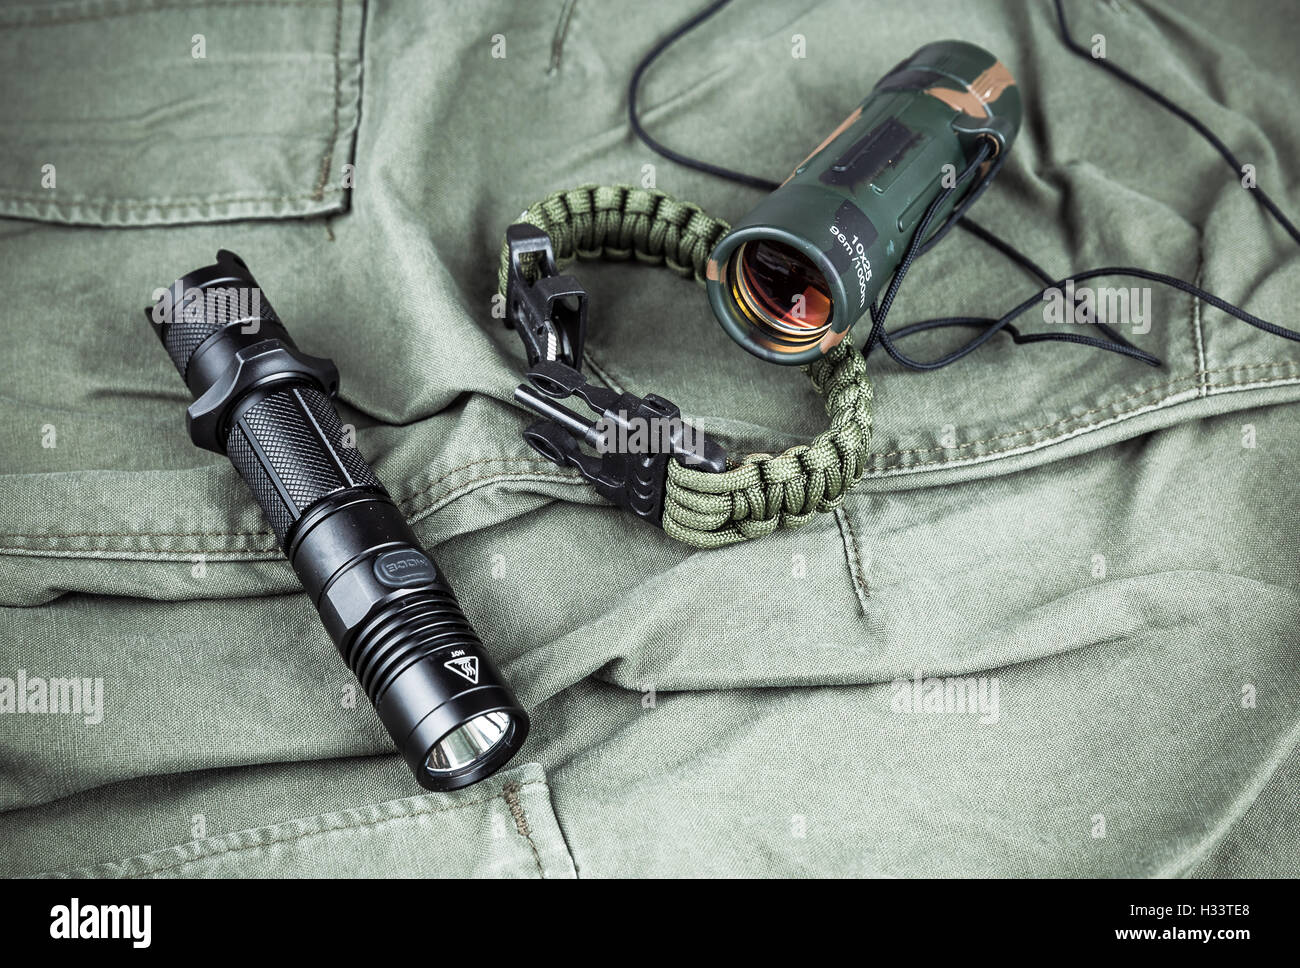 Militärische Paracord Armband, taktische Taschenlampe und Fernglas  Stockfotografie - Alamy